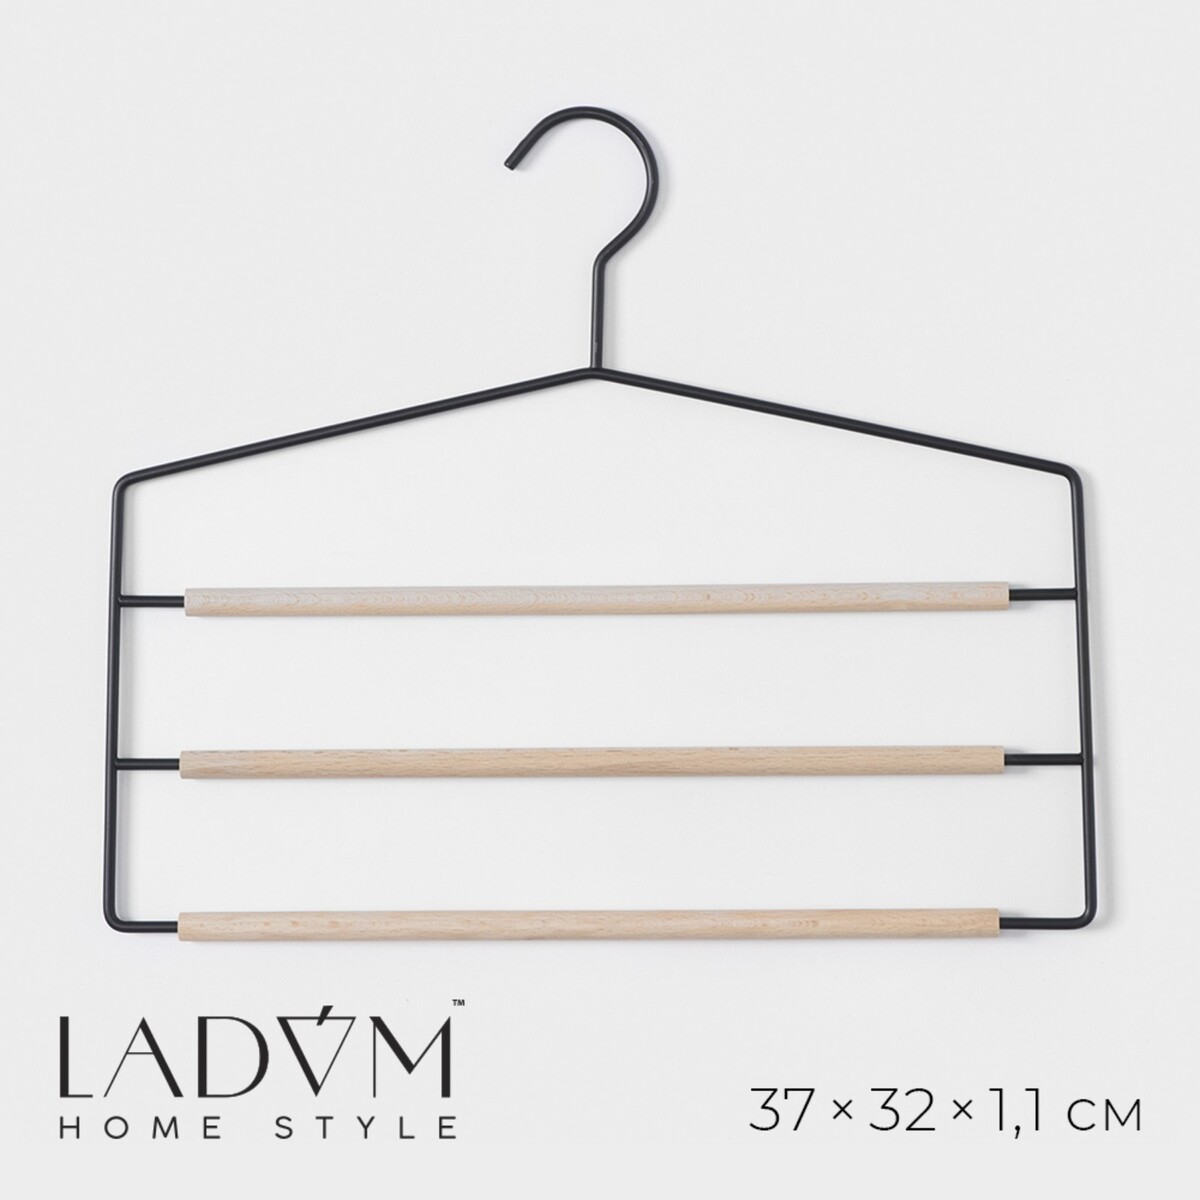 Плечики - вешалки для брюк и юбок многоуровневые ladо́m laconique, 37×31,5×1,1 см, цвет черный вешалка для брюк и юбок ladо́m laconique 28×11 5×2 8 см белый